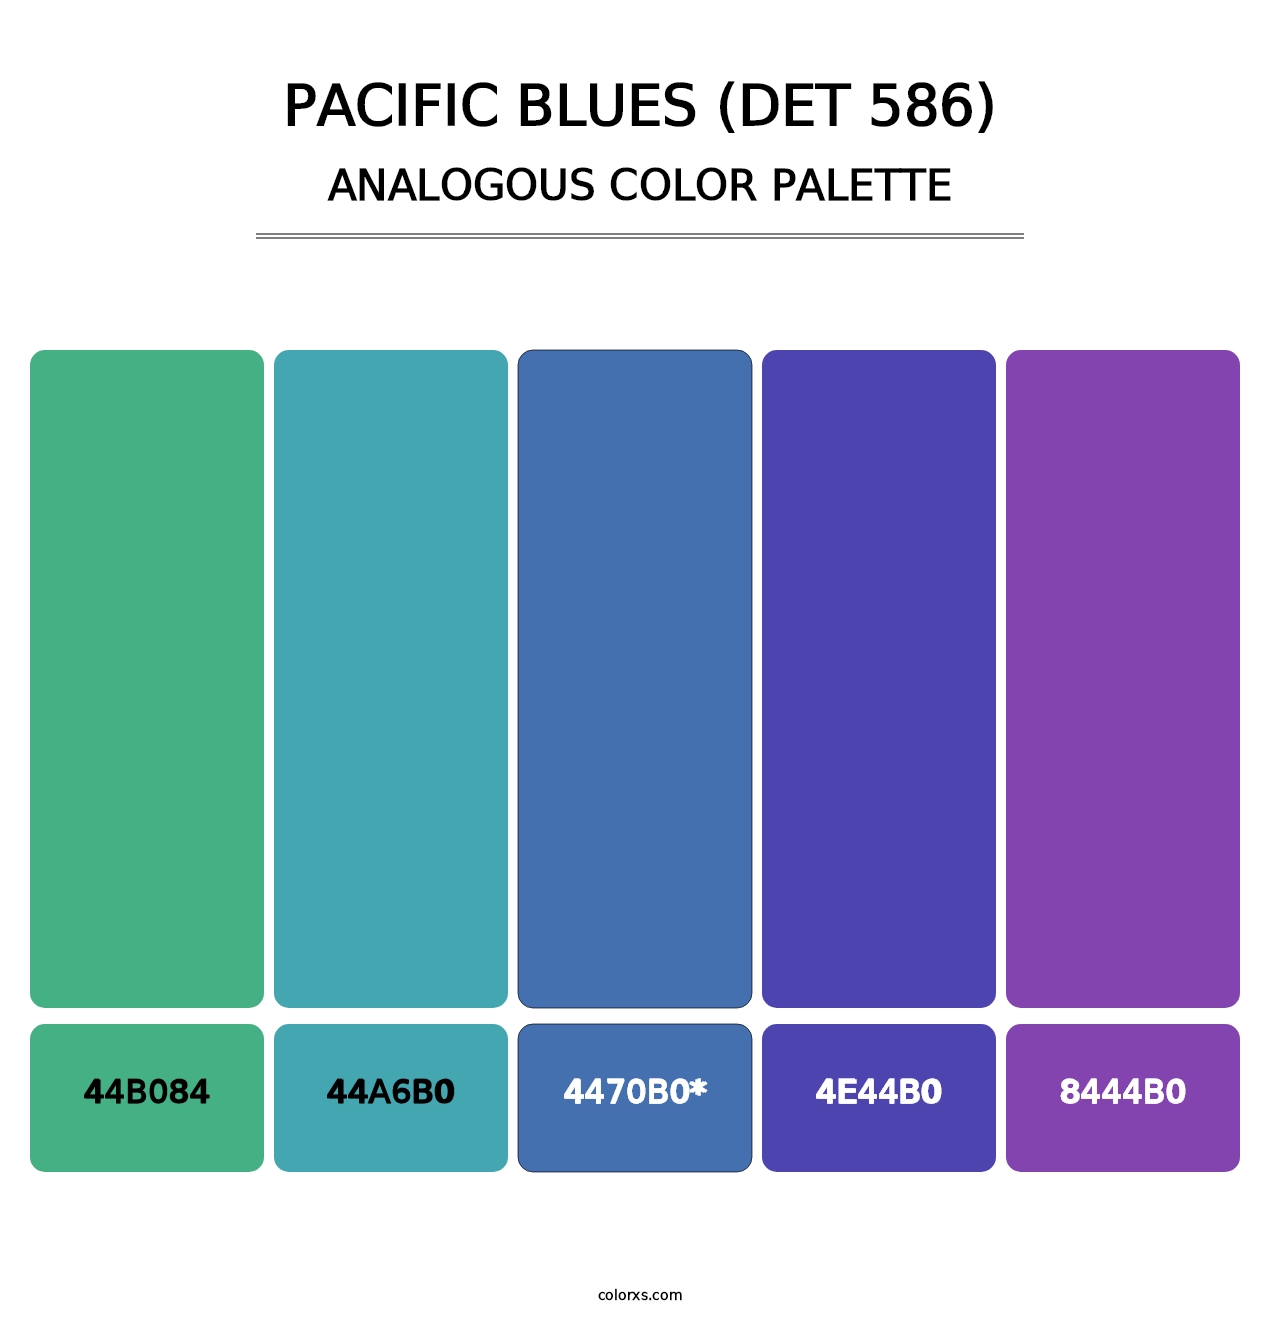 Pacific Blues (DET 586) - Analogous Color Palette